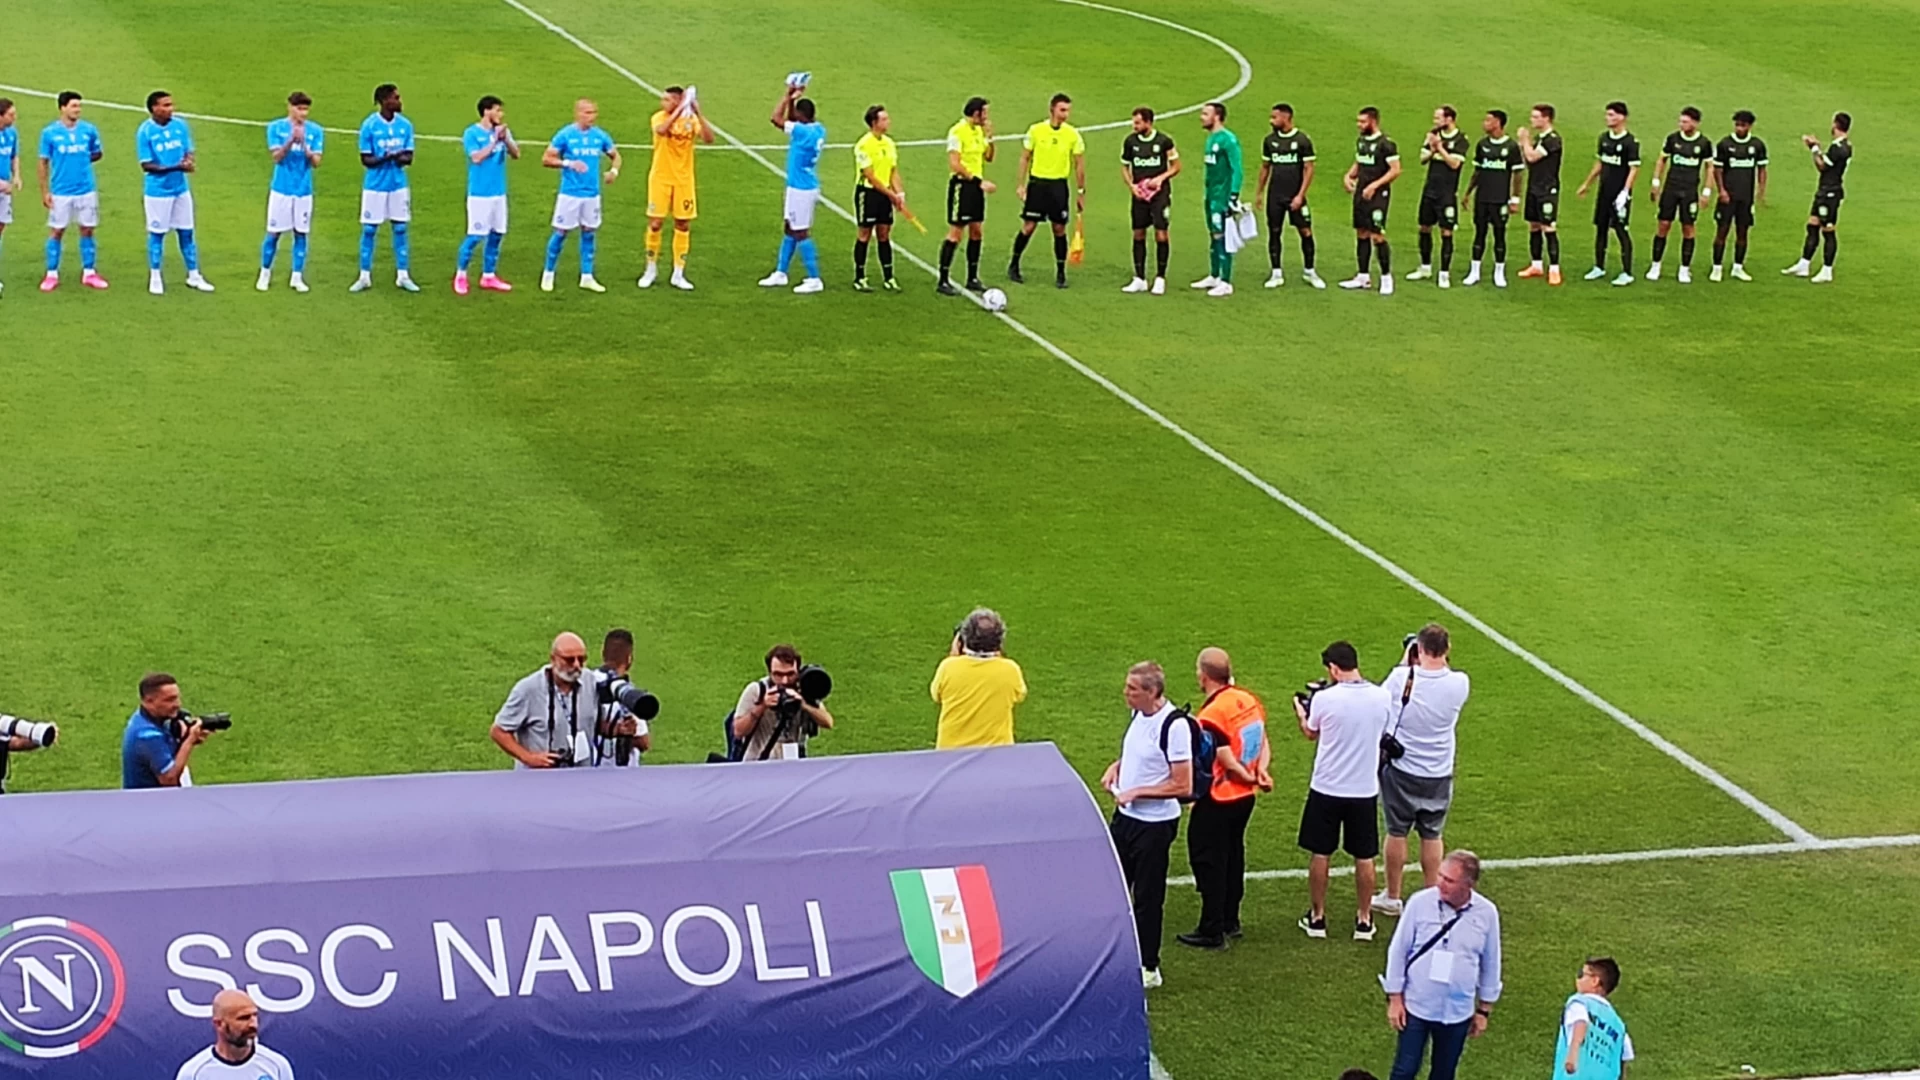 Napoli-Girona1-1: tabellino e cronaca del match dal Patini di Castel Di Sangro. Sfida decisa ai rigori, trionfa il Napoli.